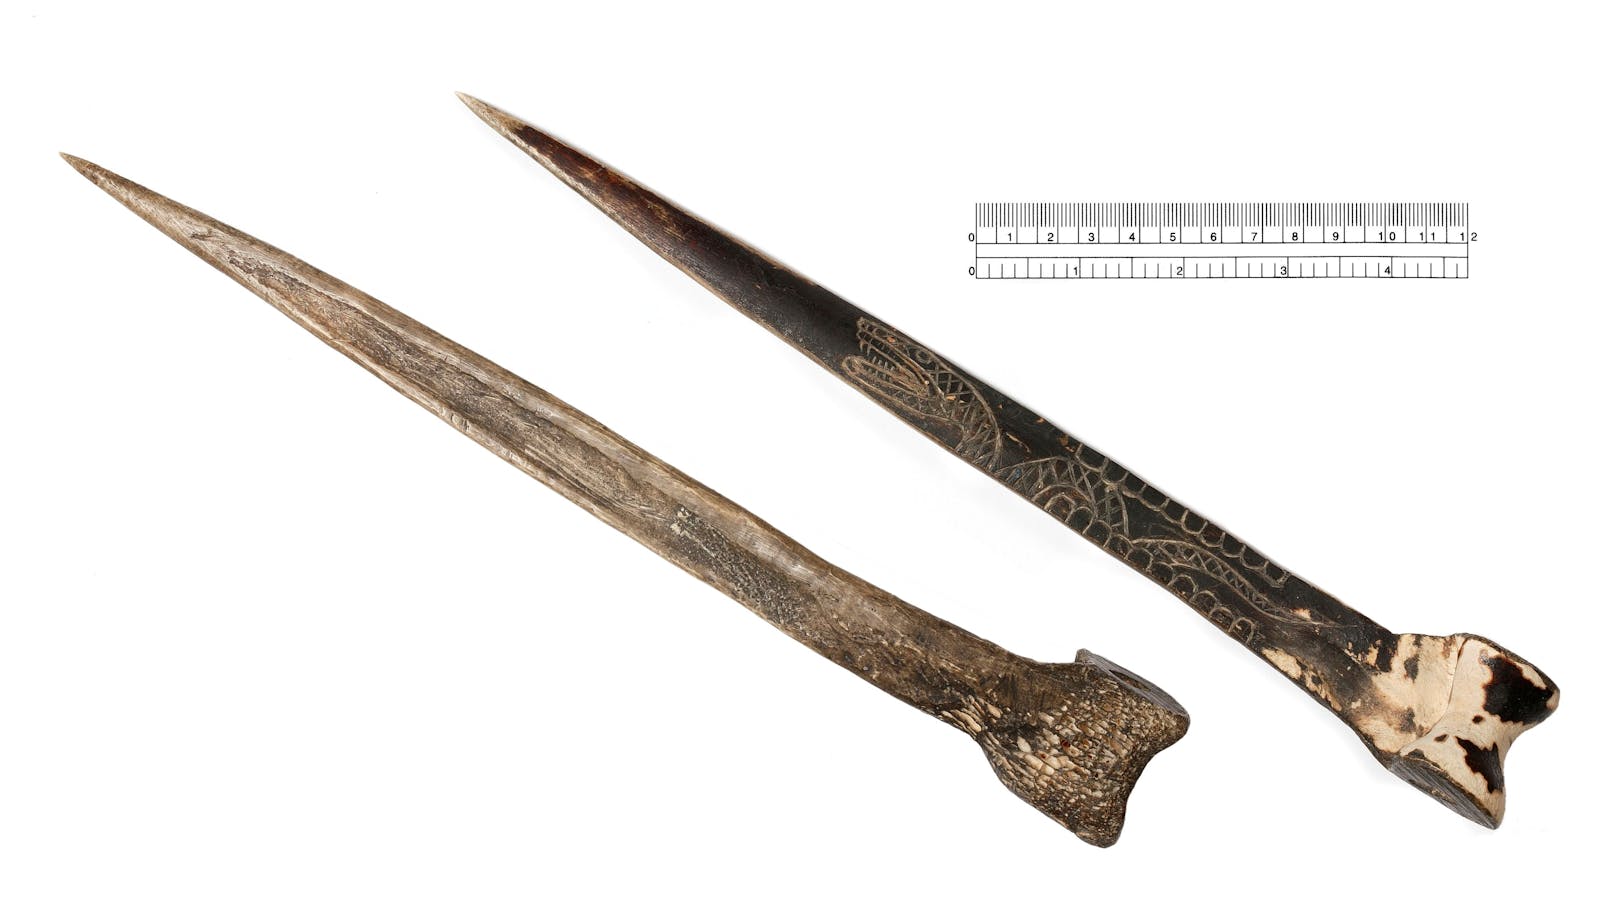 Urvölker fertigten Messer aus den Schienbeinknochen der Kasuare.